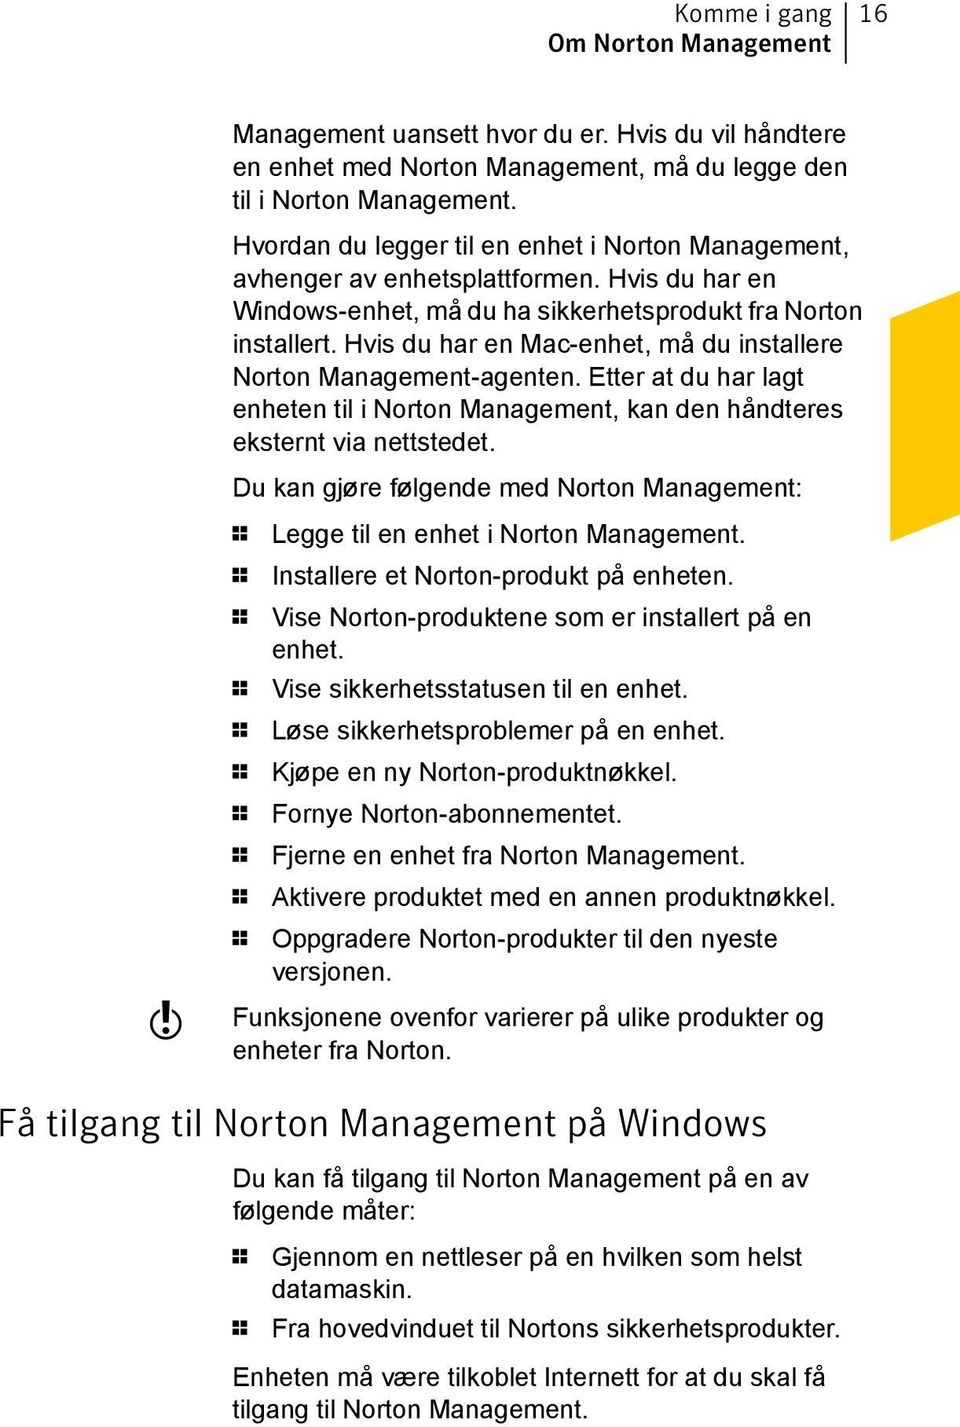 Hvis du har en Mac-enhet, må du installere Norton Management-agenten. Etter at du har lagt enheten til i Norton Management, kan den håndteres eksternt via nettstedet.